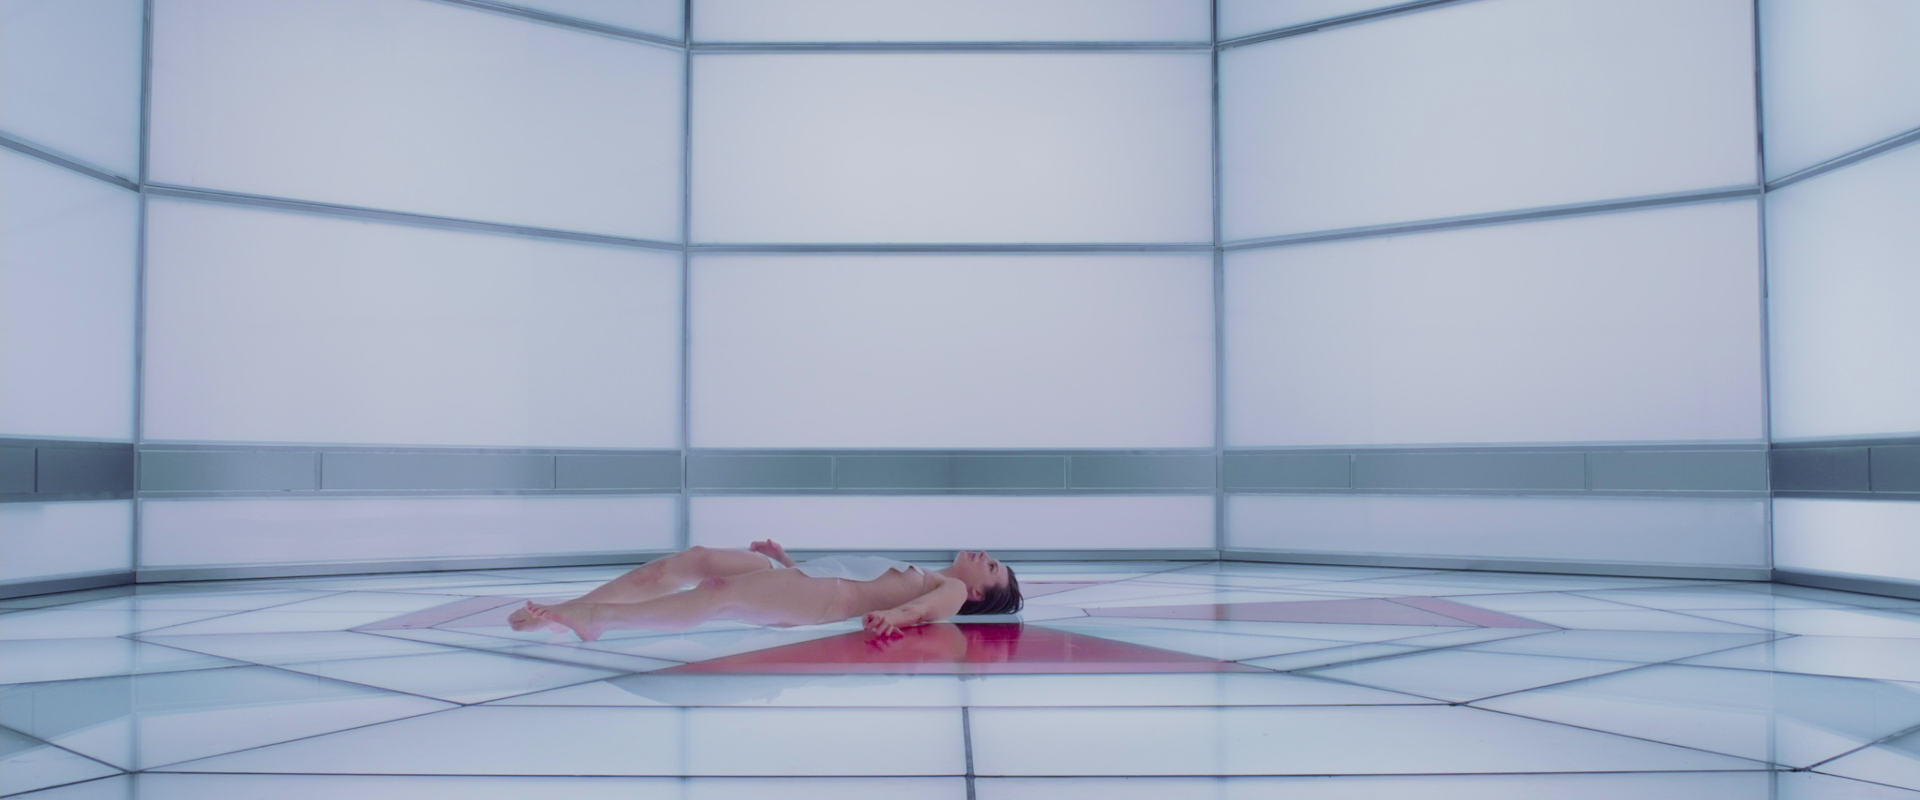 Milla Jovovich nude pics.